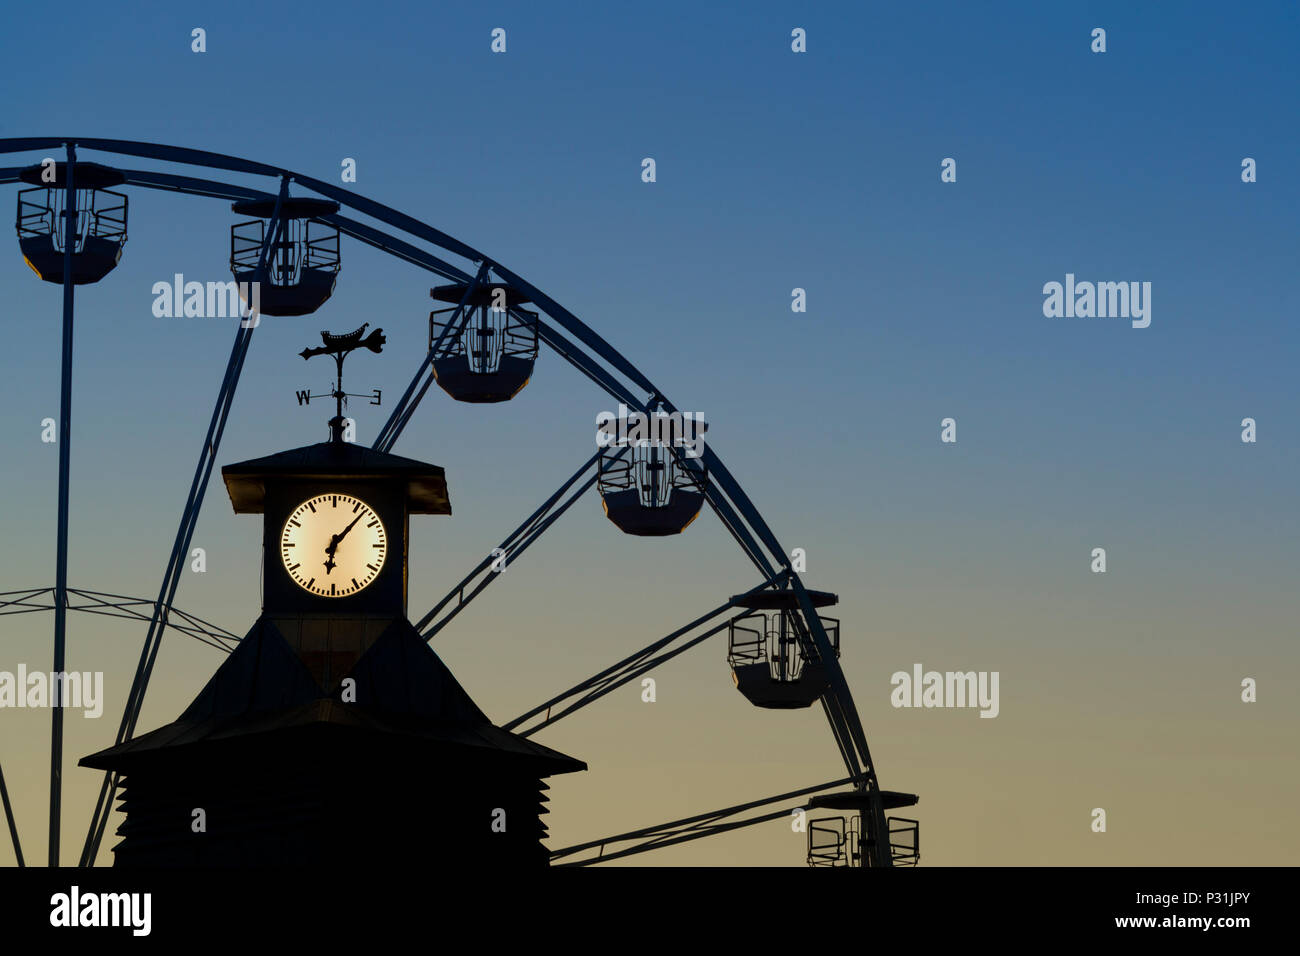 Die Uhr der Bournemouth Pier mit dem großen Rad im Hintergrund Schuß gegen ein Abendhimmel. Stockfoto